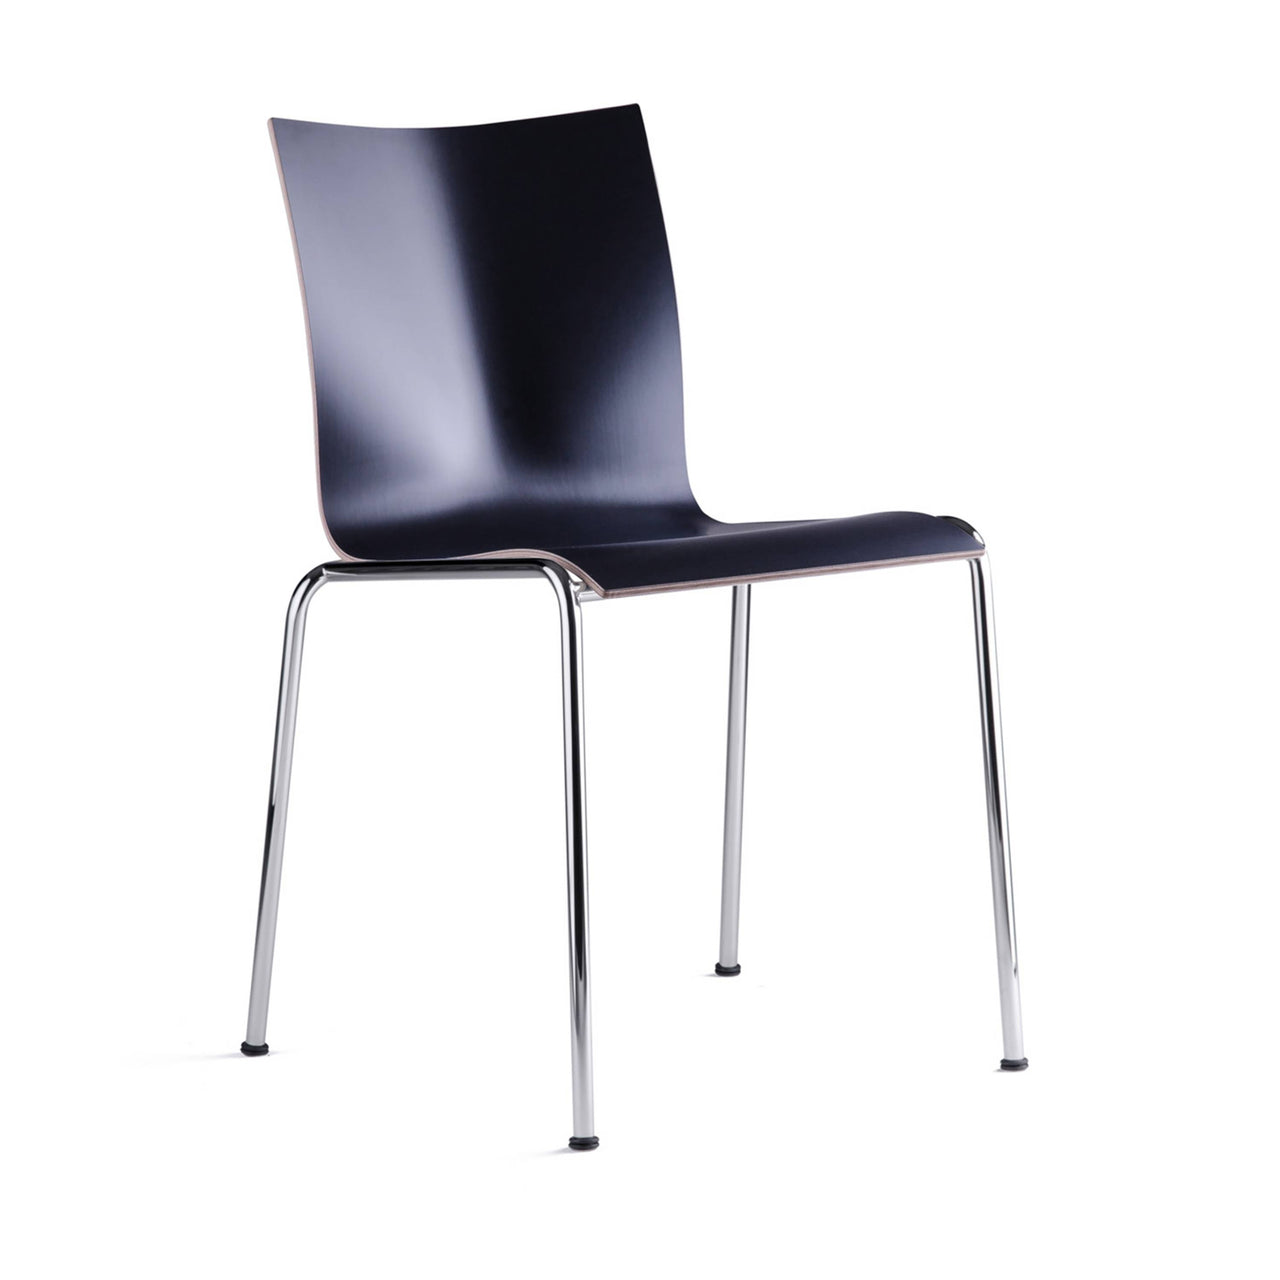 Chairik 101 Chair: Melamine + Black